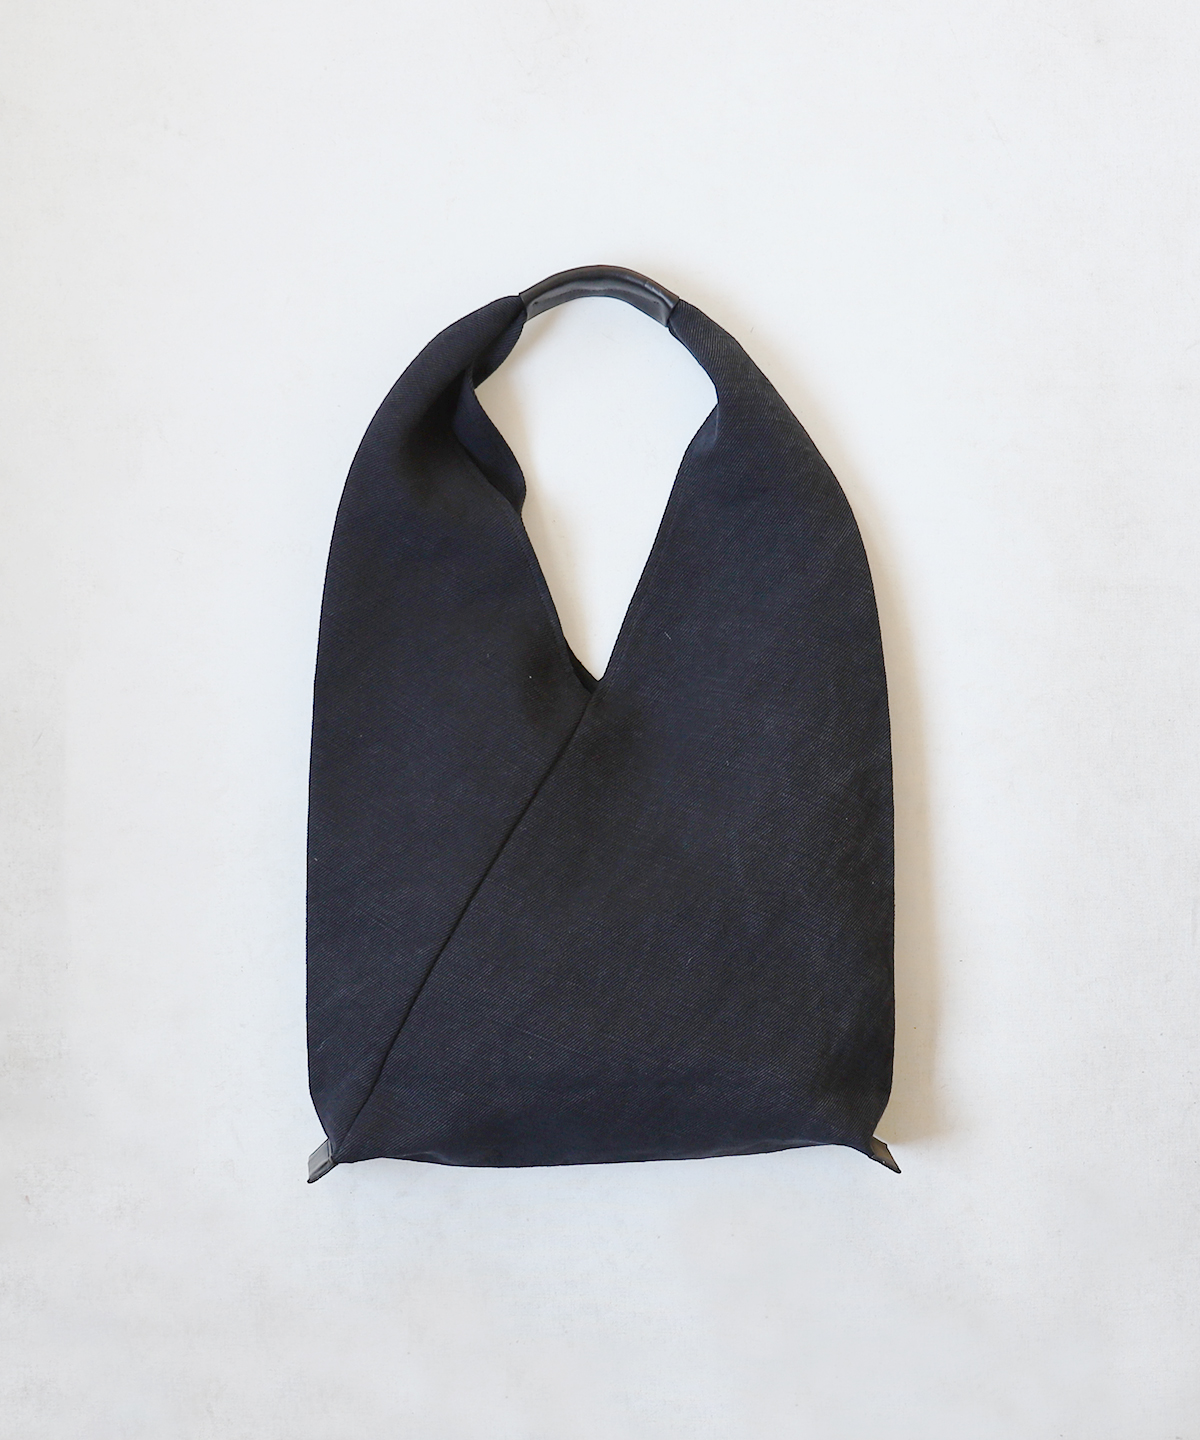 Hender scheme / azuma bag big｜nest Robe ONLINE SHOP